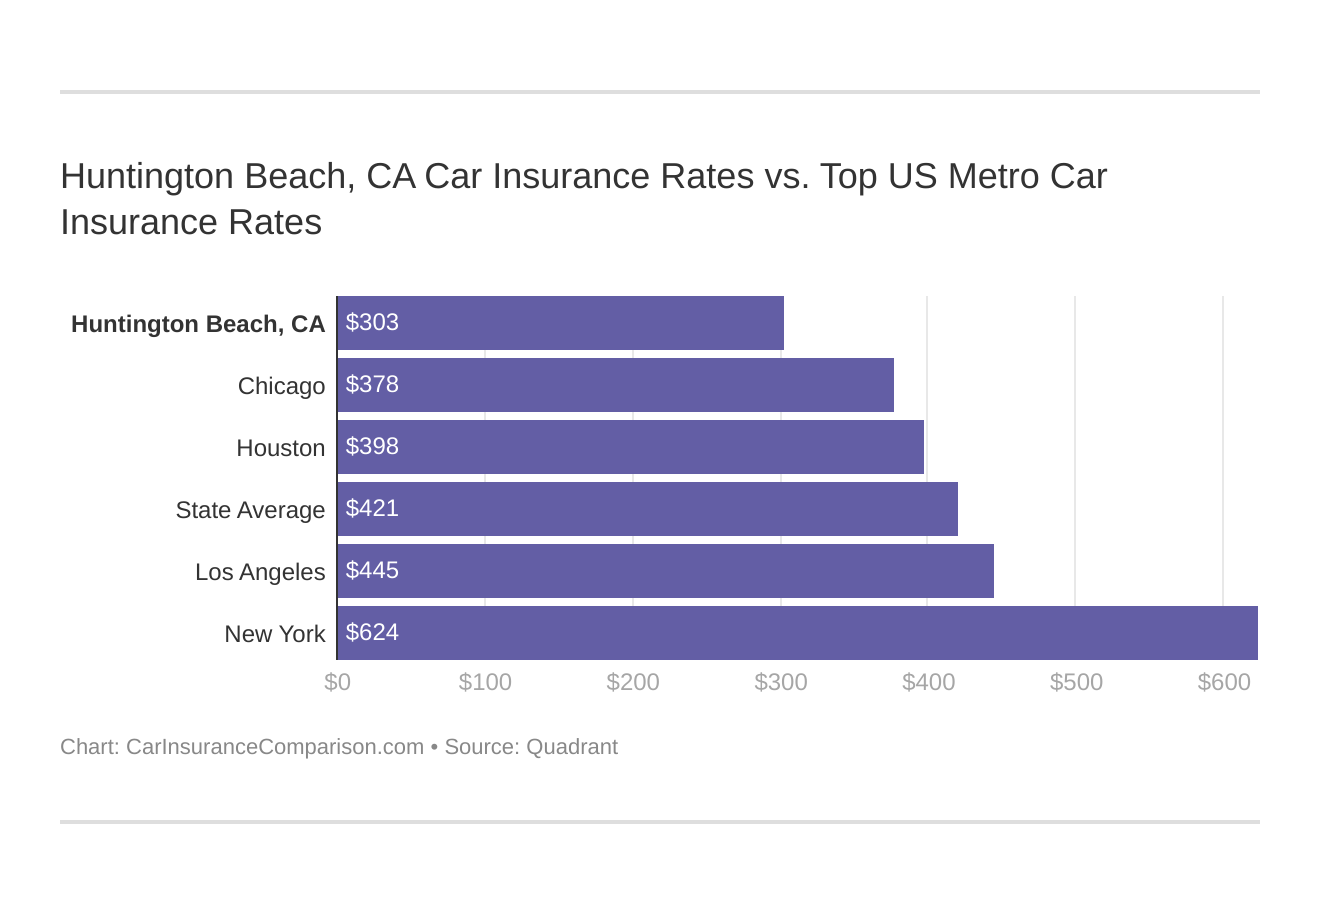 Huntington Beach, CA Car Insurance Rates vs. Top US Metro Car Insurance Rates